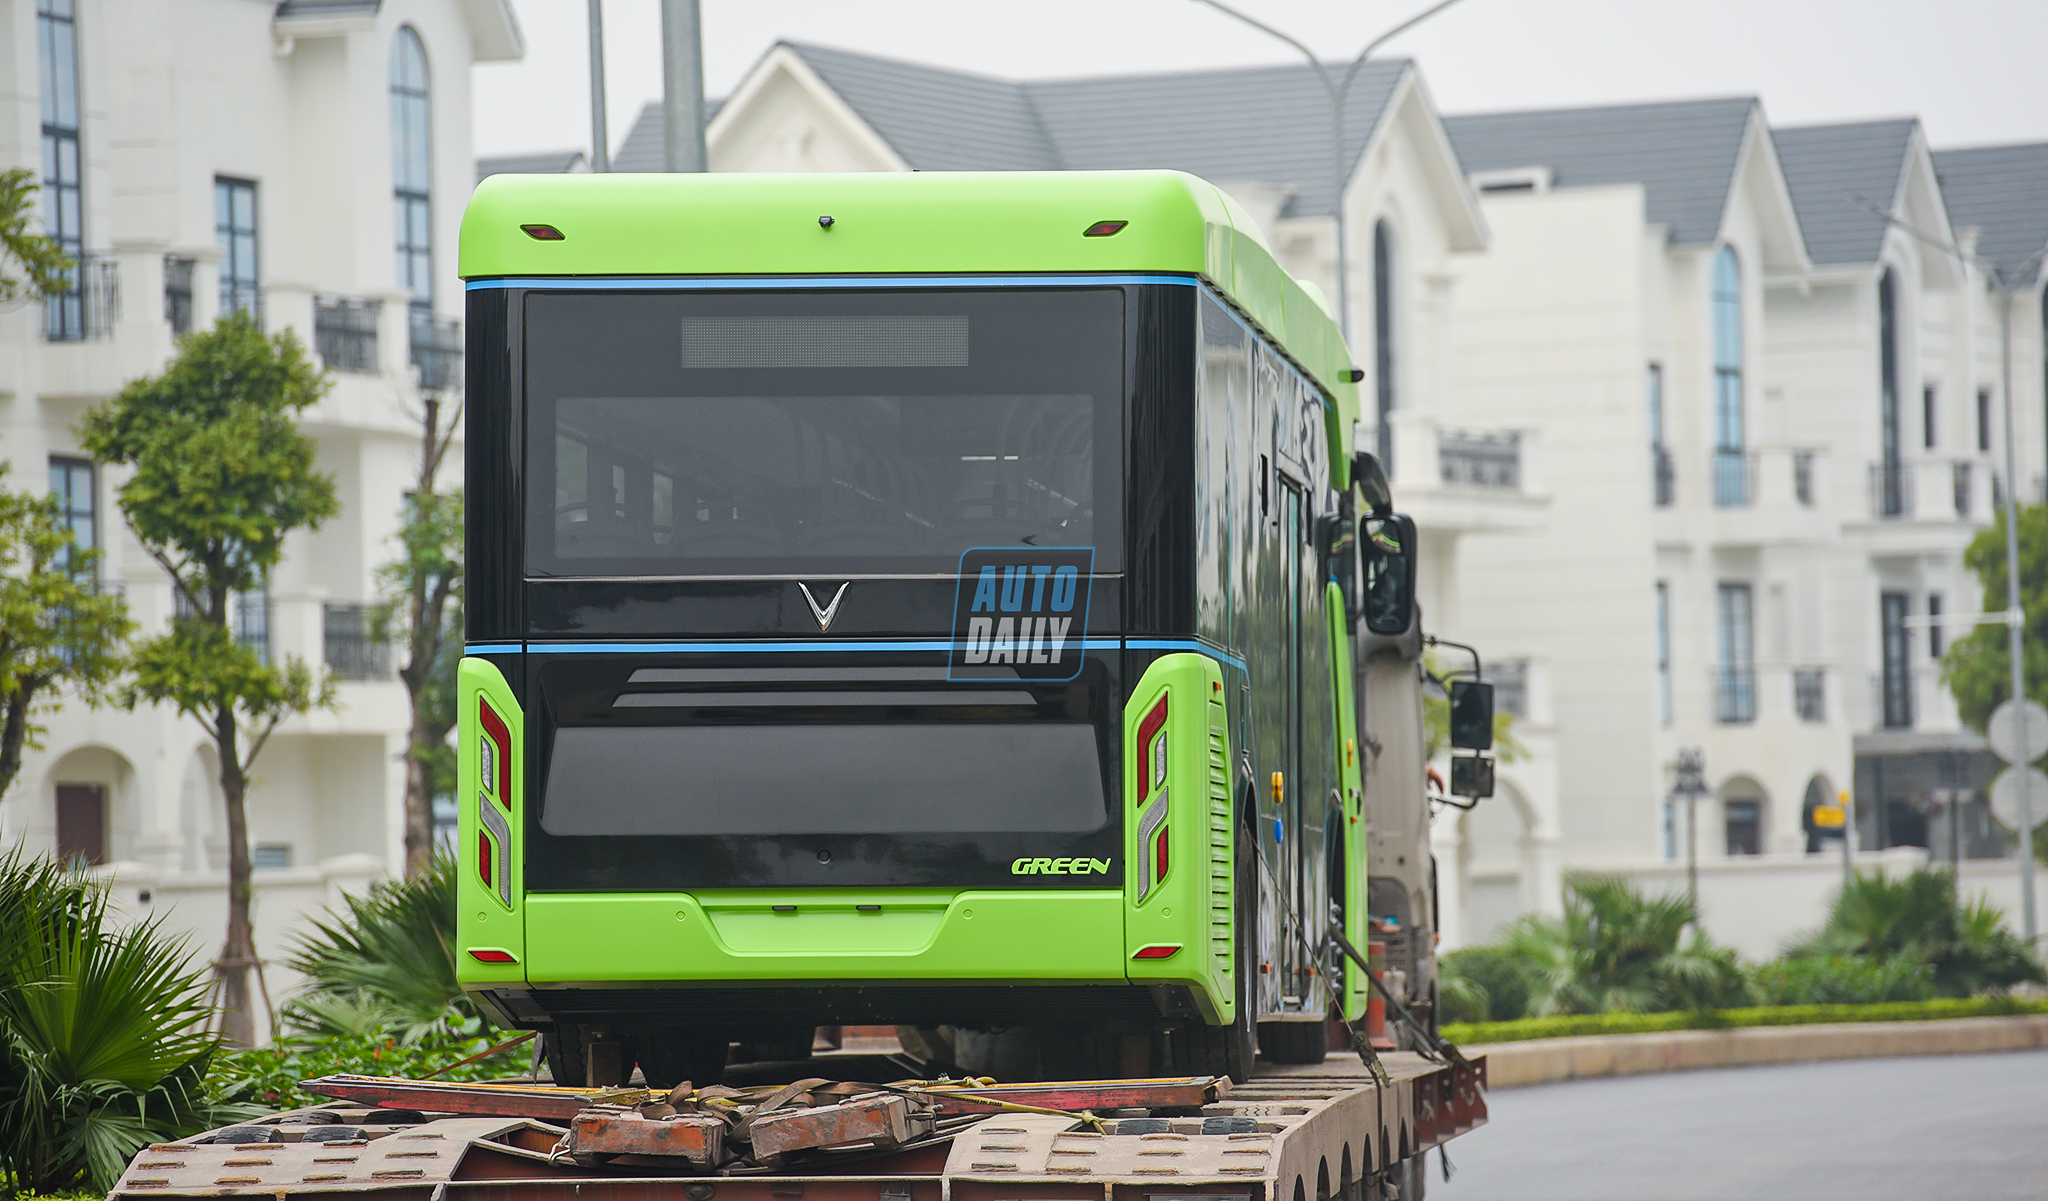 Chùm ảnh loạt xe Bus điện VinFast có mặt tại Hà Nội, sẵn sàng chạy thí điểm dsc-3902-copy.jpg